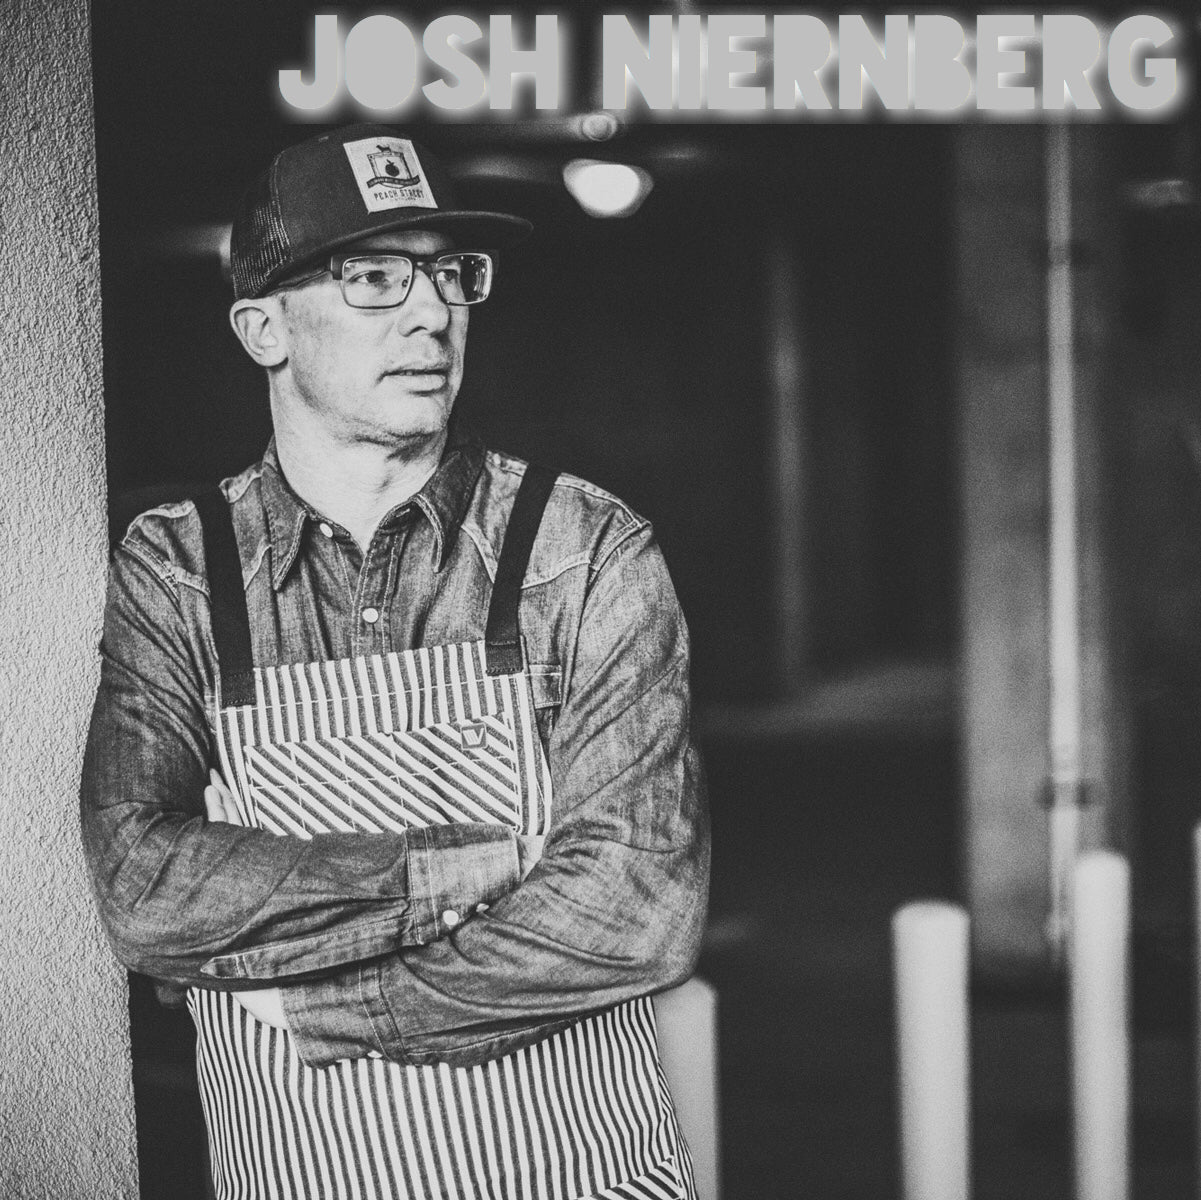 2018 Colorado FIVE member Josh Niernberg